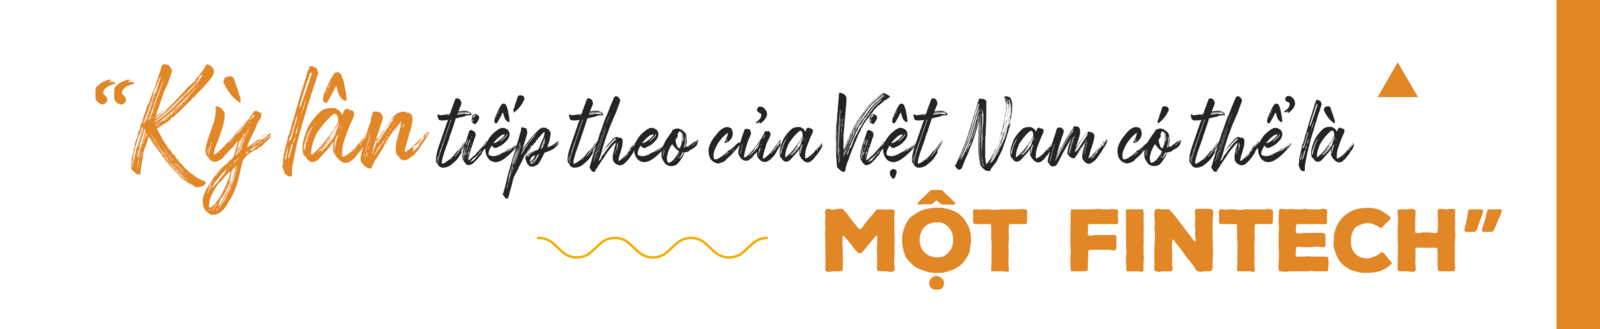 ‘Bà mối’ cho các thương vụ đầu tư tại Việt Nam: Startup với tôi giống như hơi thở rồi - Ảnh 7.